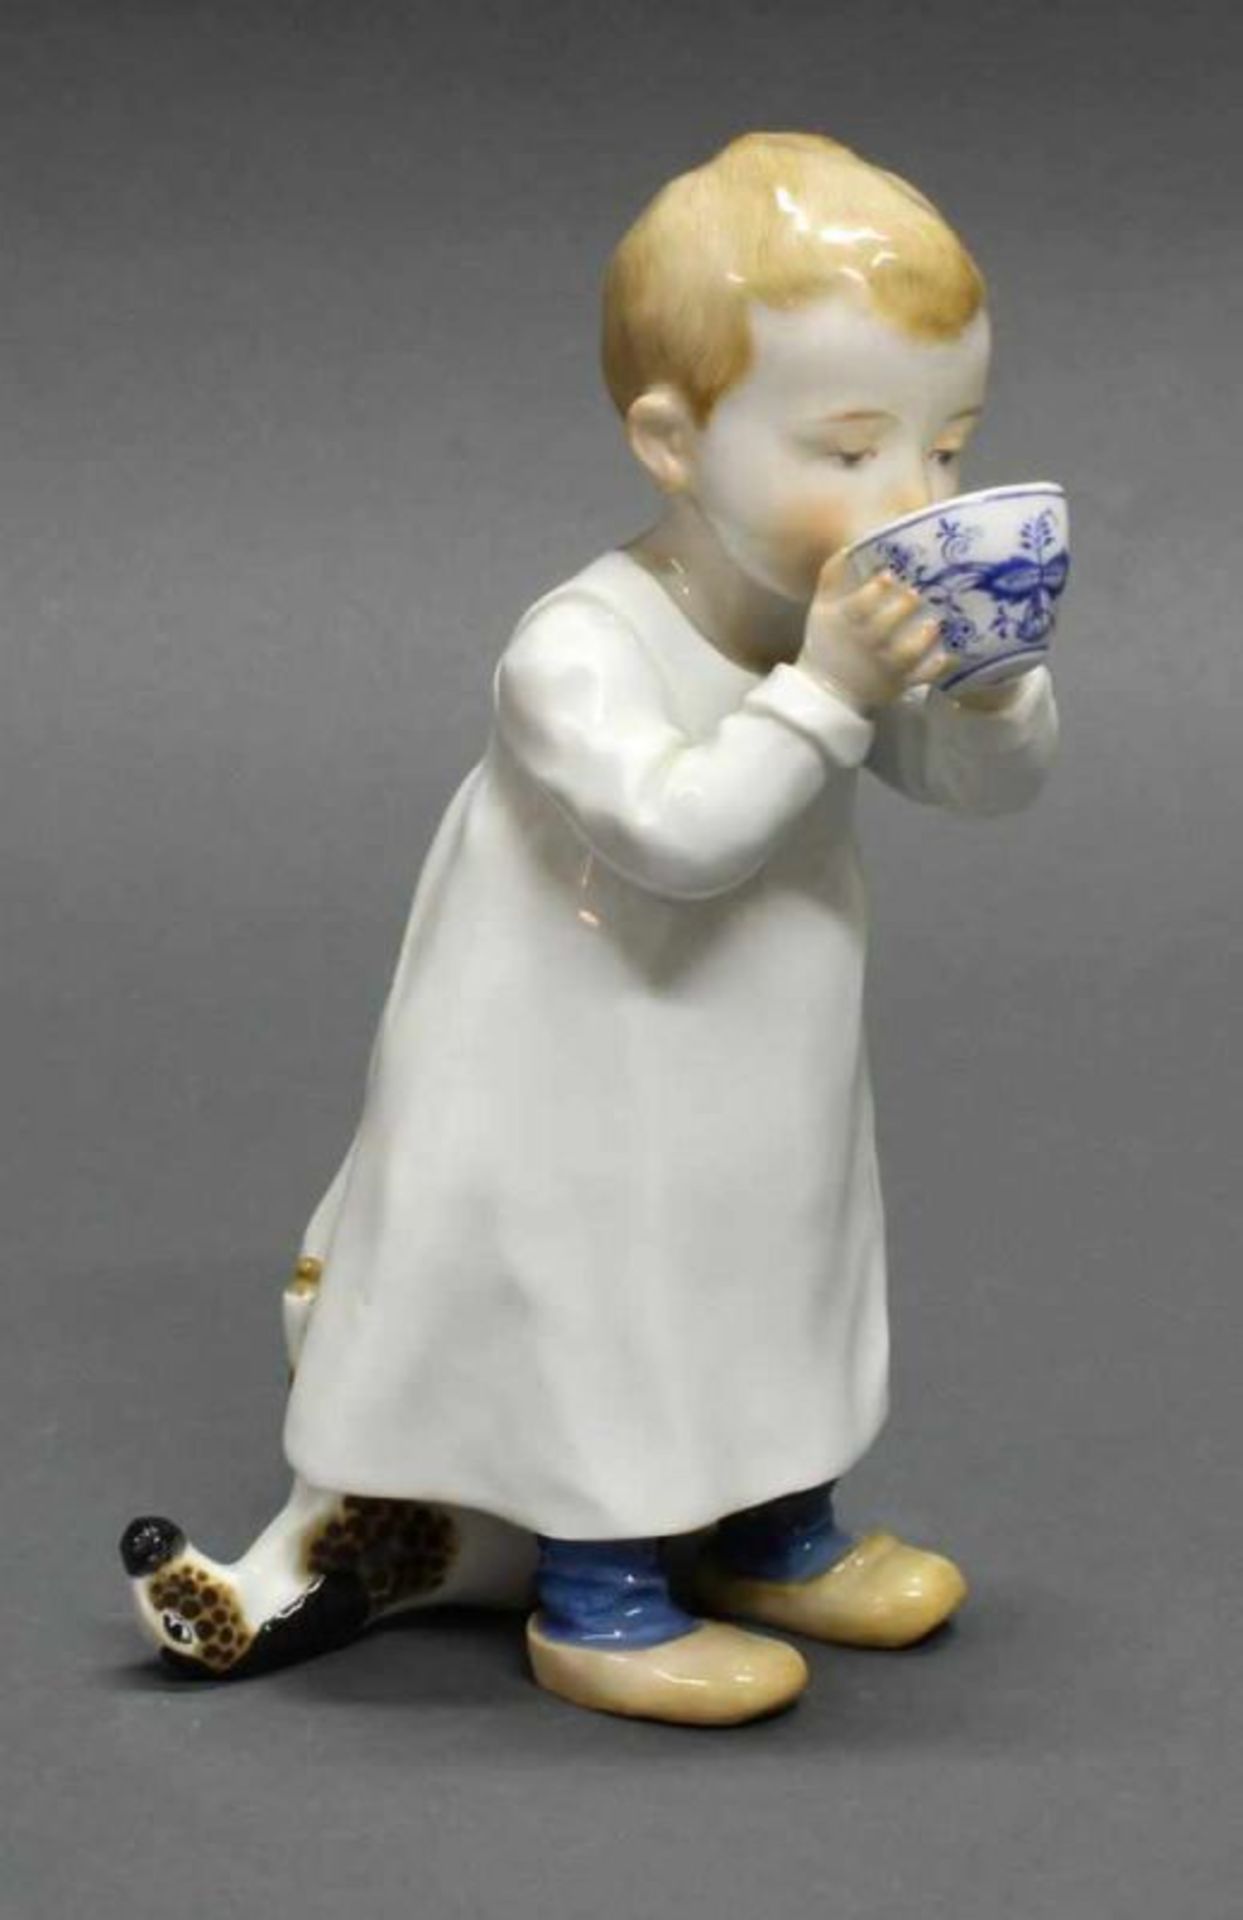 Porzellanfigur, "Kind aus einer Tasse trinkend", Meissen, Schwertermarke, 2. Wahl, Modellnummer W